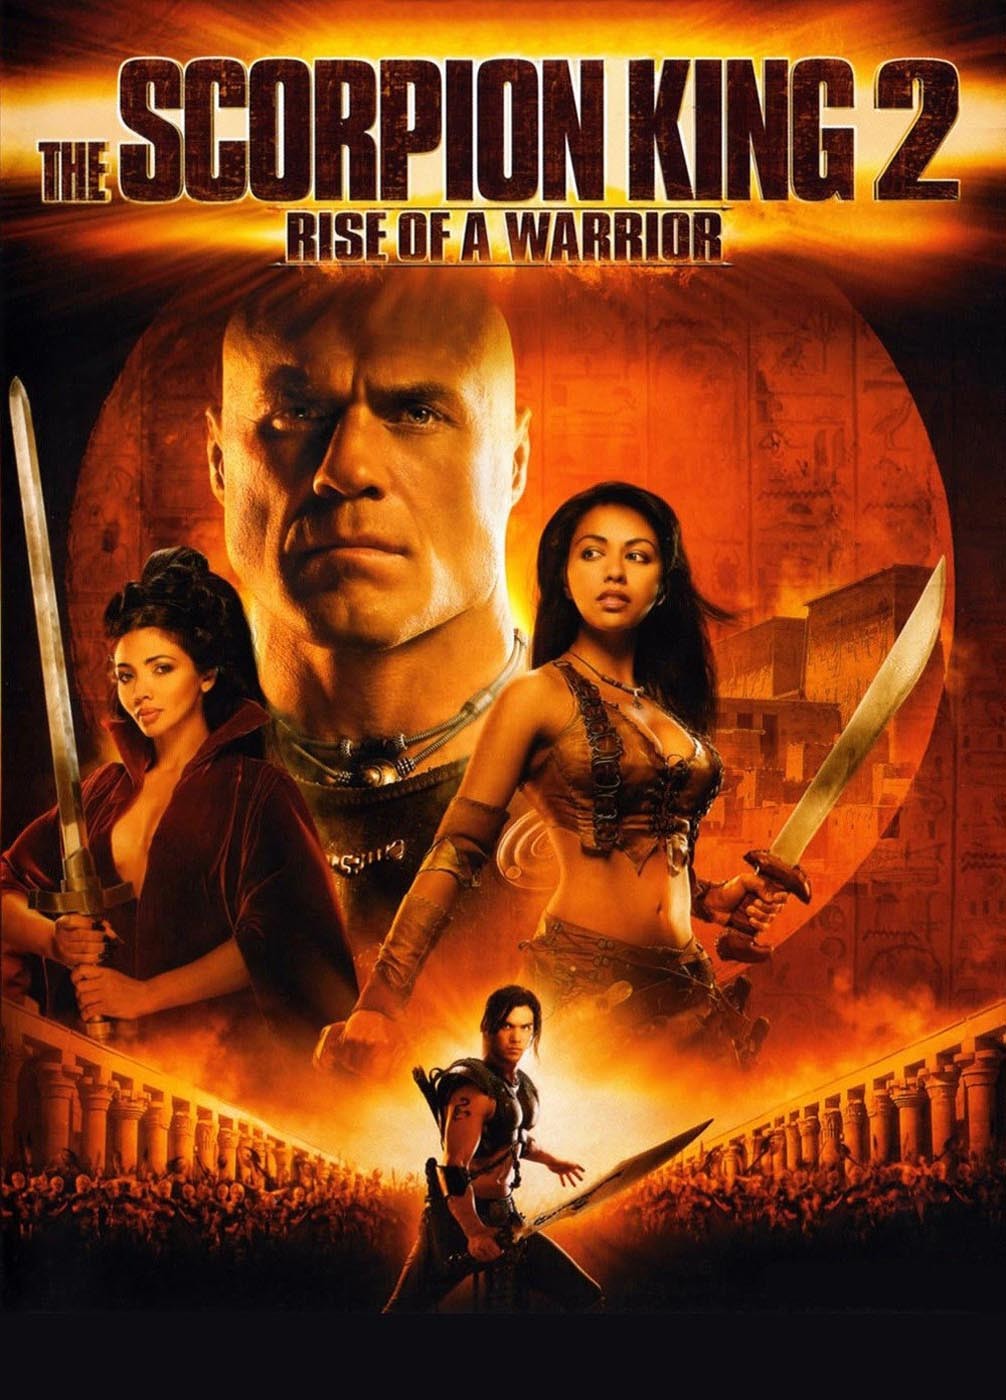 Царь скорпионов 2: Восхождение воина / The Scorpion King 2: Rise of a Warrior (2008) отзывы. Рецензии. Новости кино. Актеры фильма Царь скорпионов 2: Восхождение воина. Отзывы о фильме Царь скорпионов 2: Восхождение воина